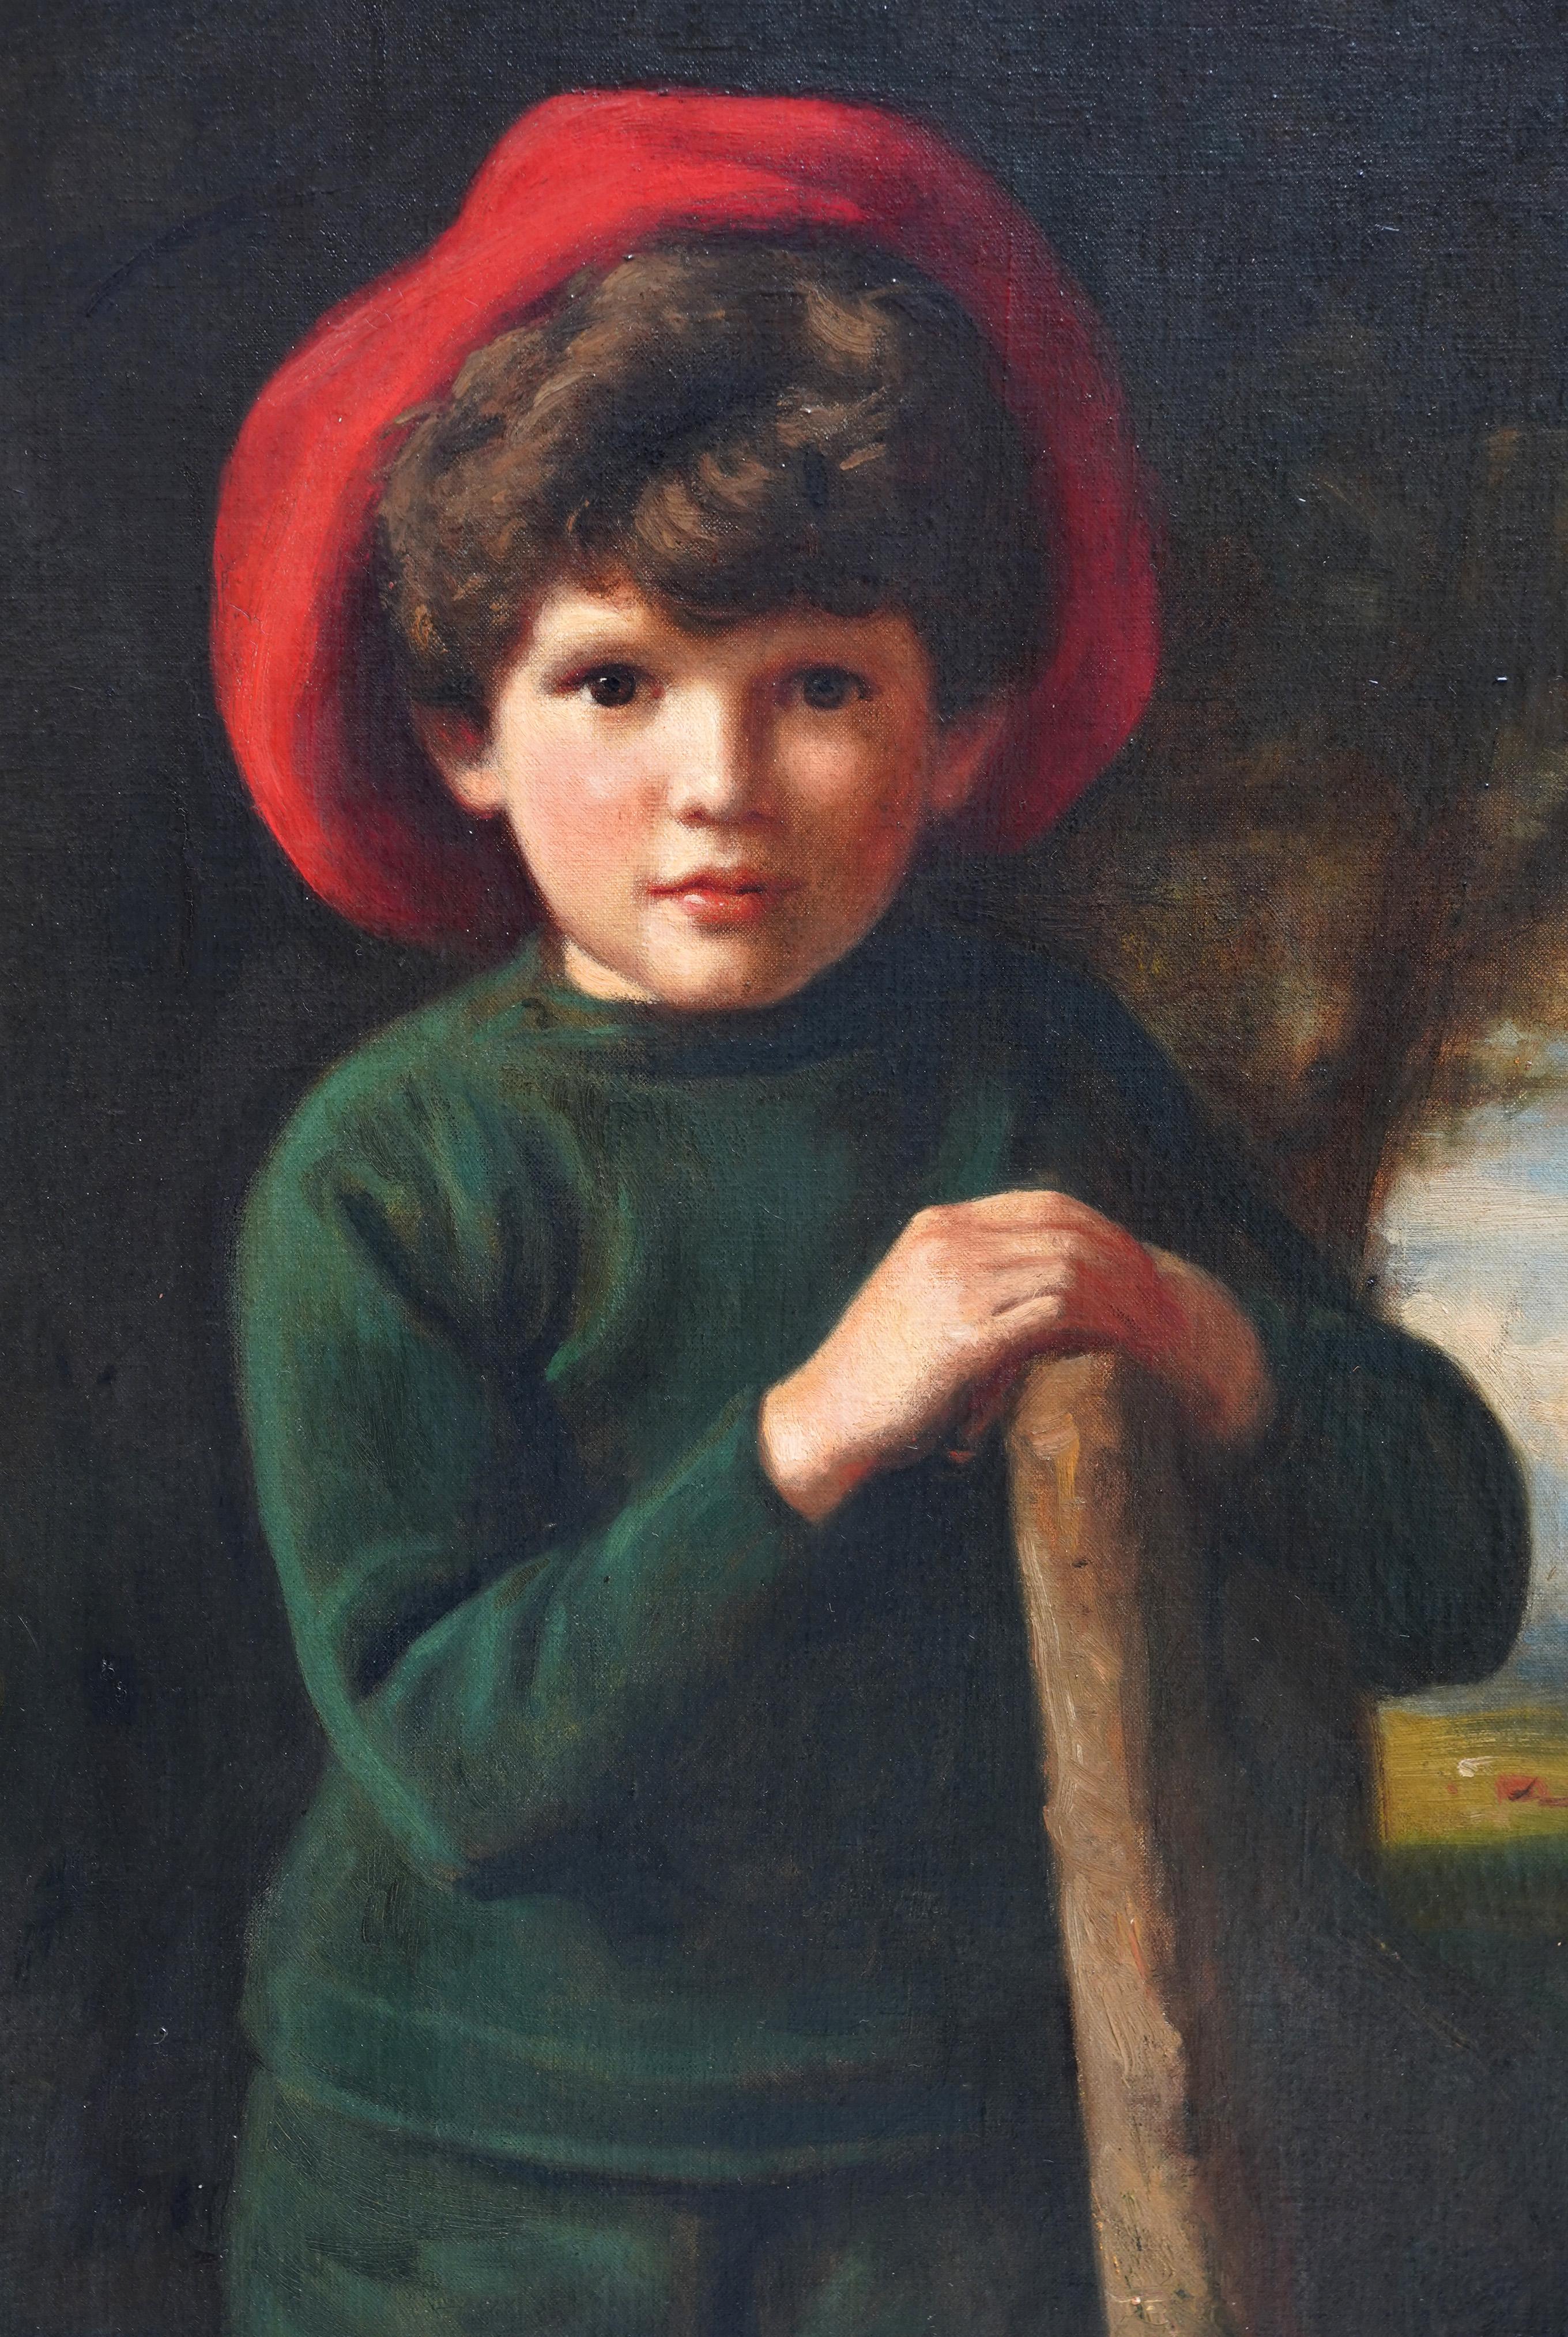 Dieses absolut charmante edwardianische Porträt-Ölgemälde stammt von dem bekannten Künstler Edward Francis Wells. Der Dargestellte ist Brian de Lolme Bullock als sechsjähriger Junge, gemalt 1908. (Es handelt sich um ein stehendes Porträt in halber